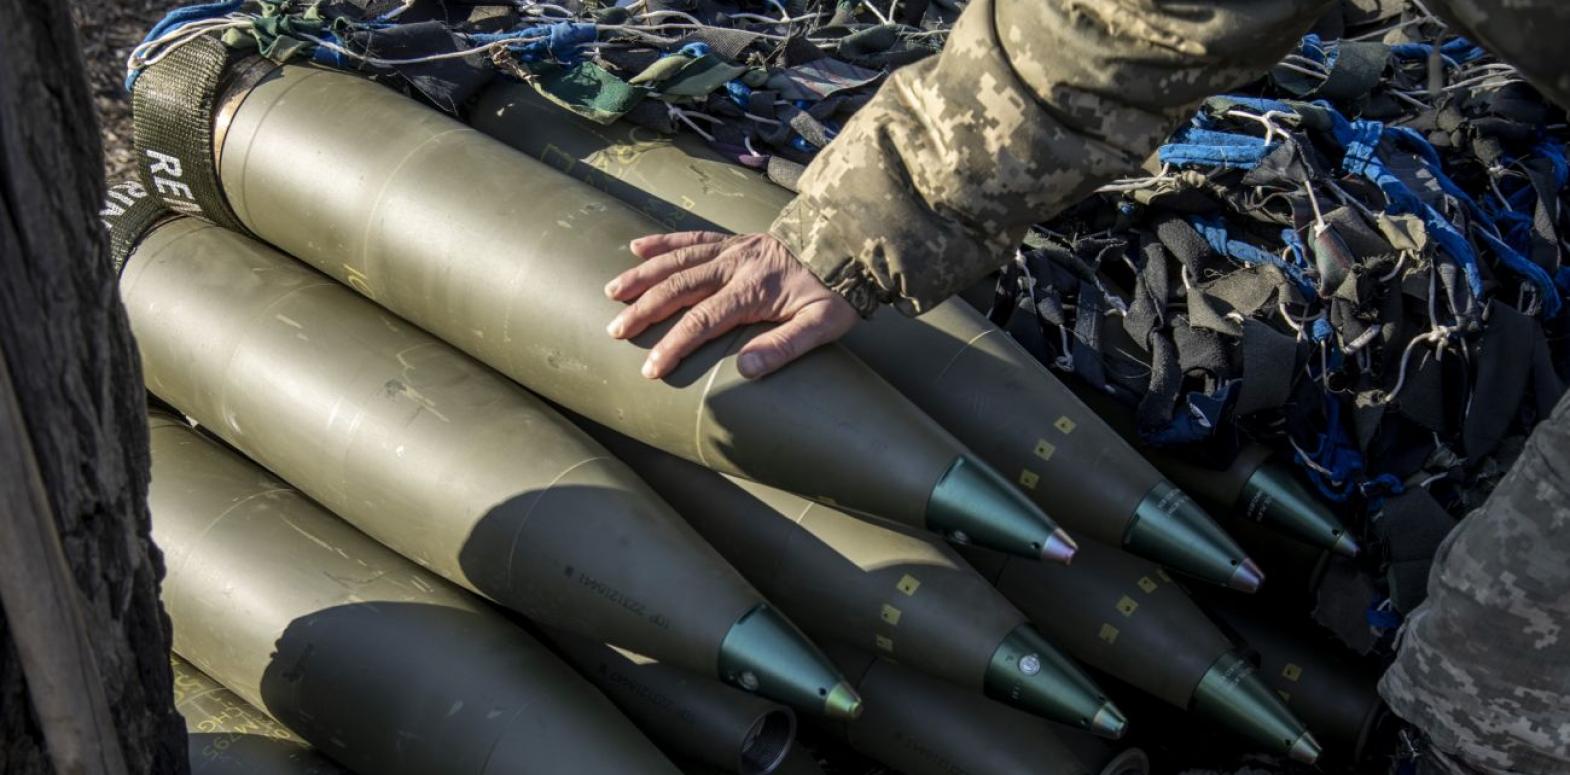 Украина через третьи страны получает боеприпасы из Сербии, - FT